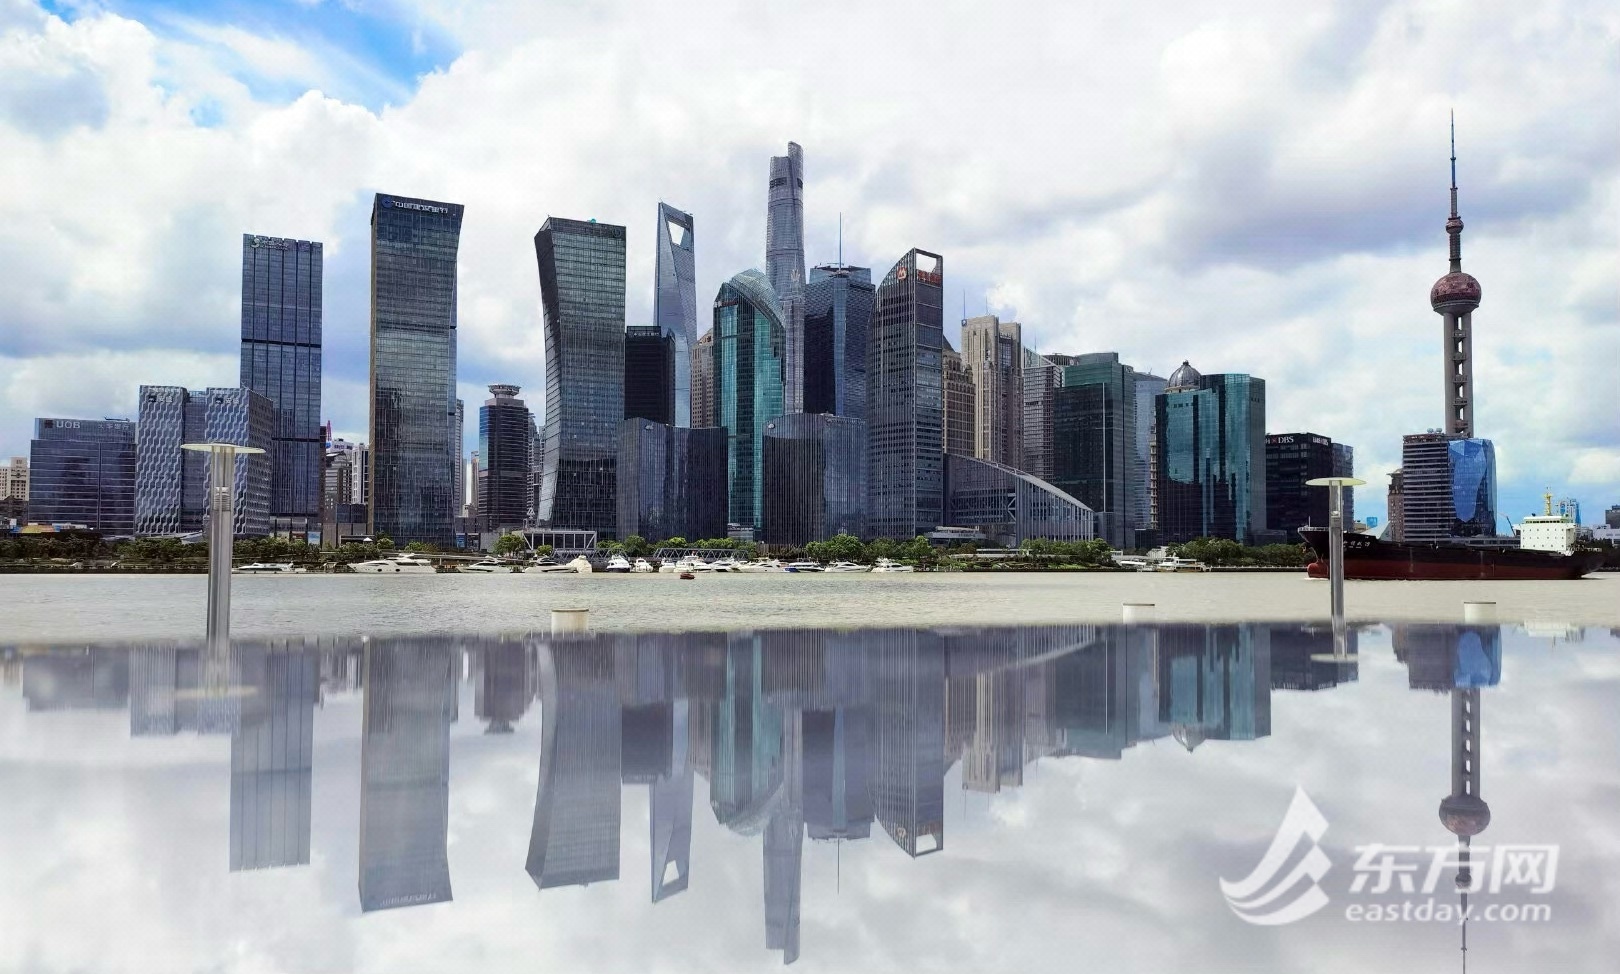 上海商业地产市场释放积极信号:购物中心客流量回升,酒店入住率恢复